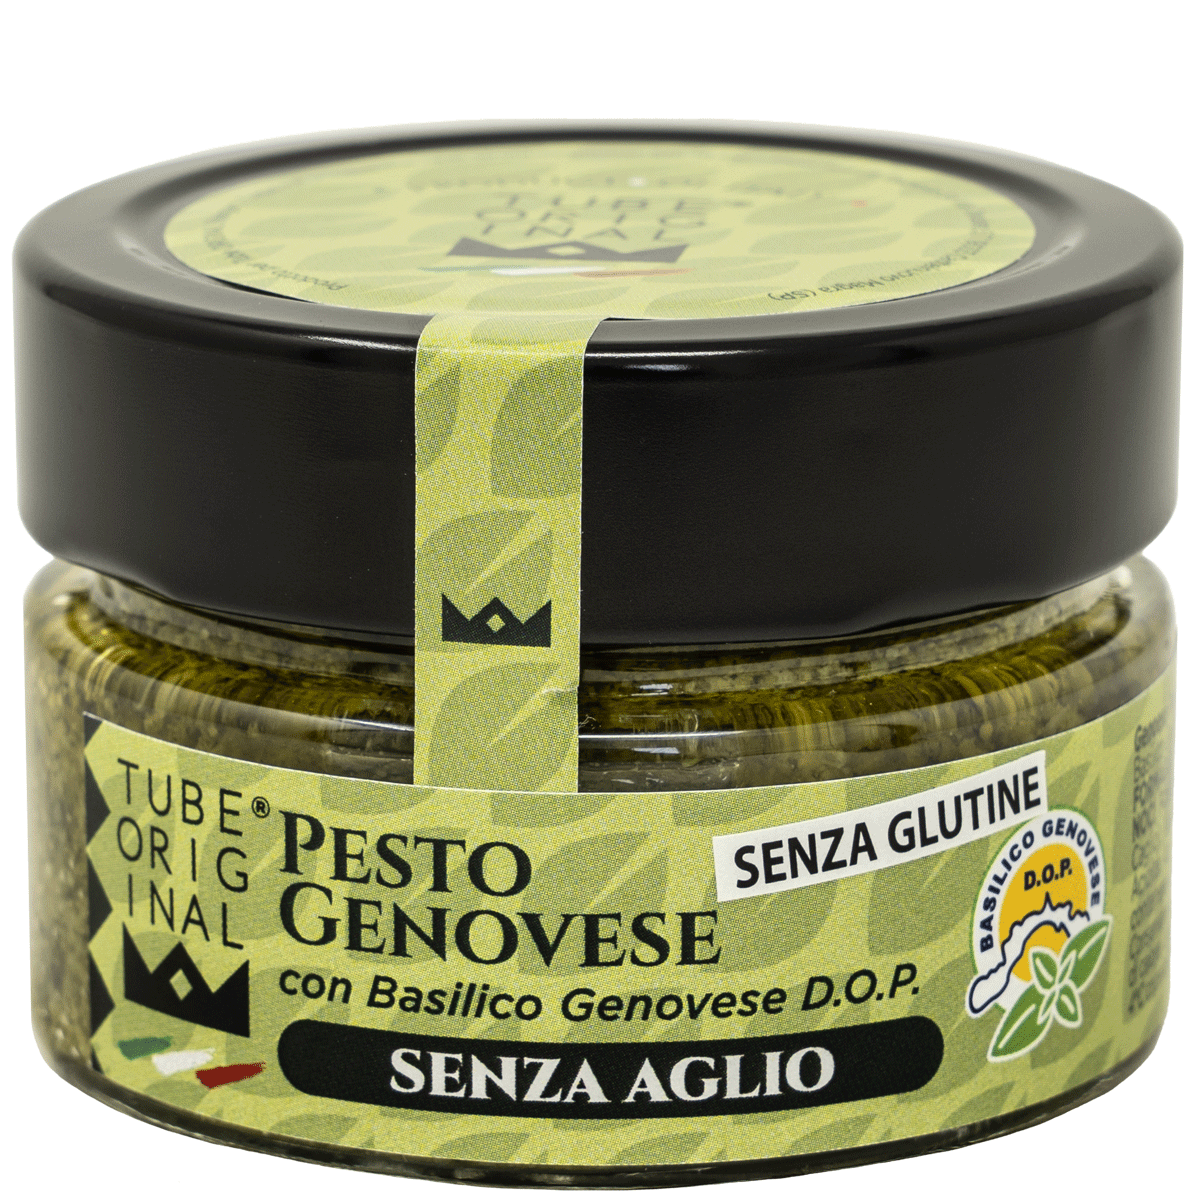 Genovese Pesto with Genovese D.O.P Basil, Garlic-free